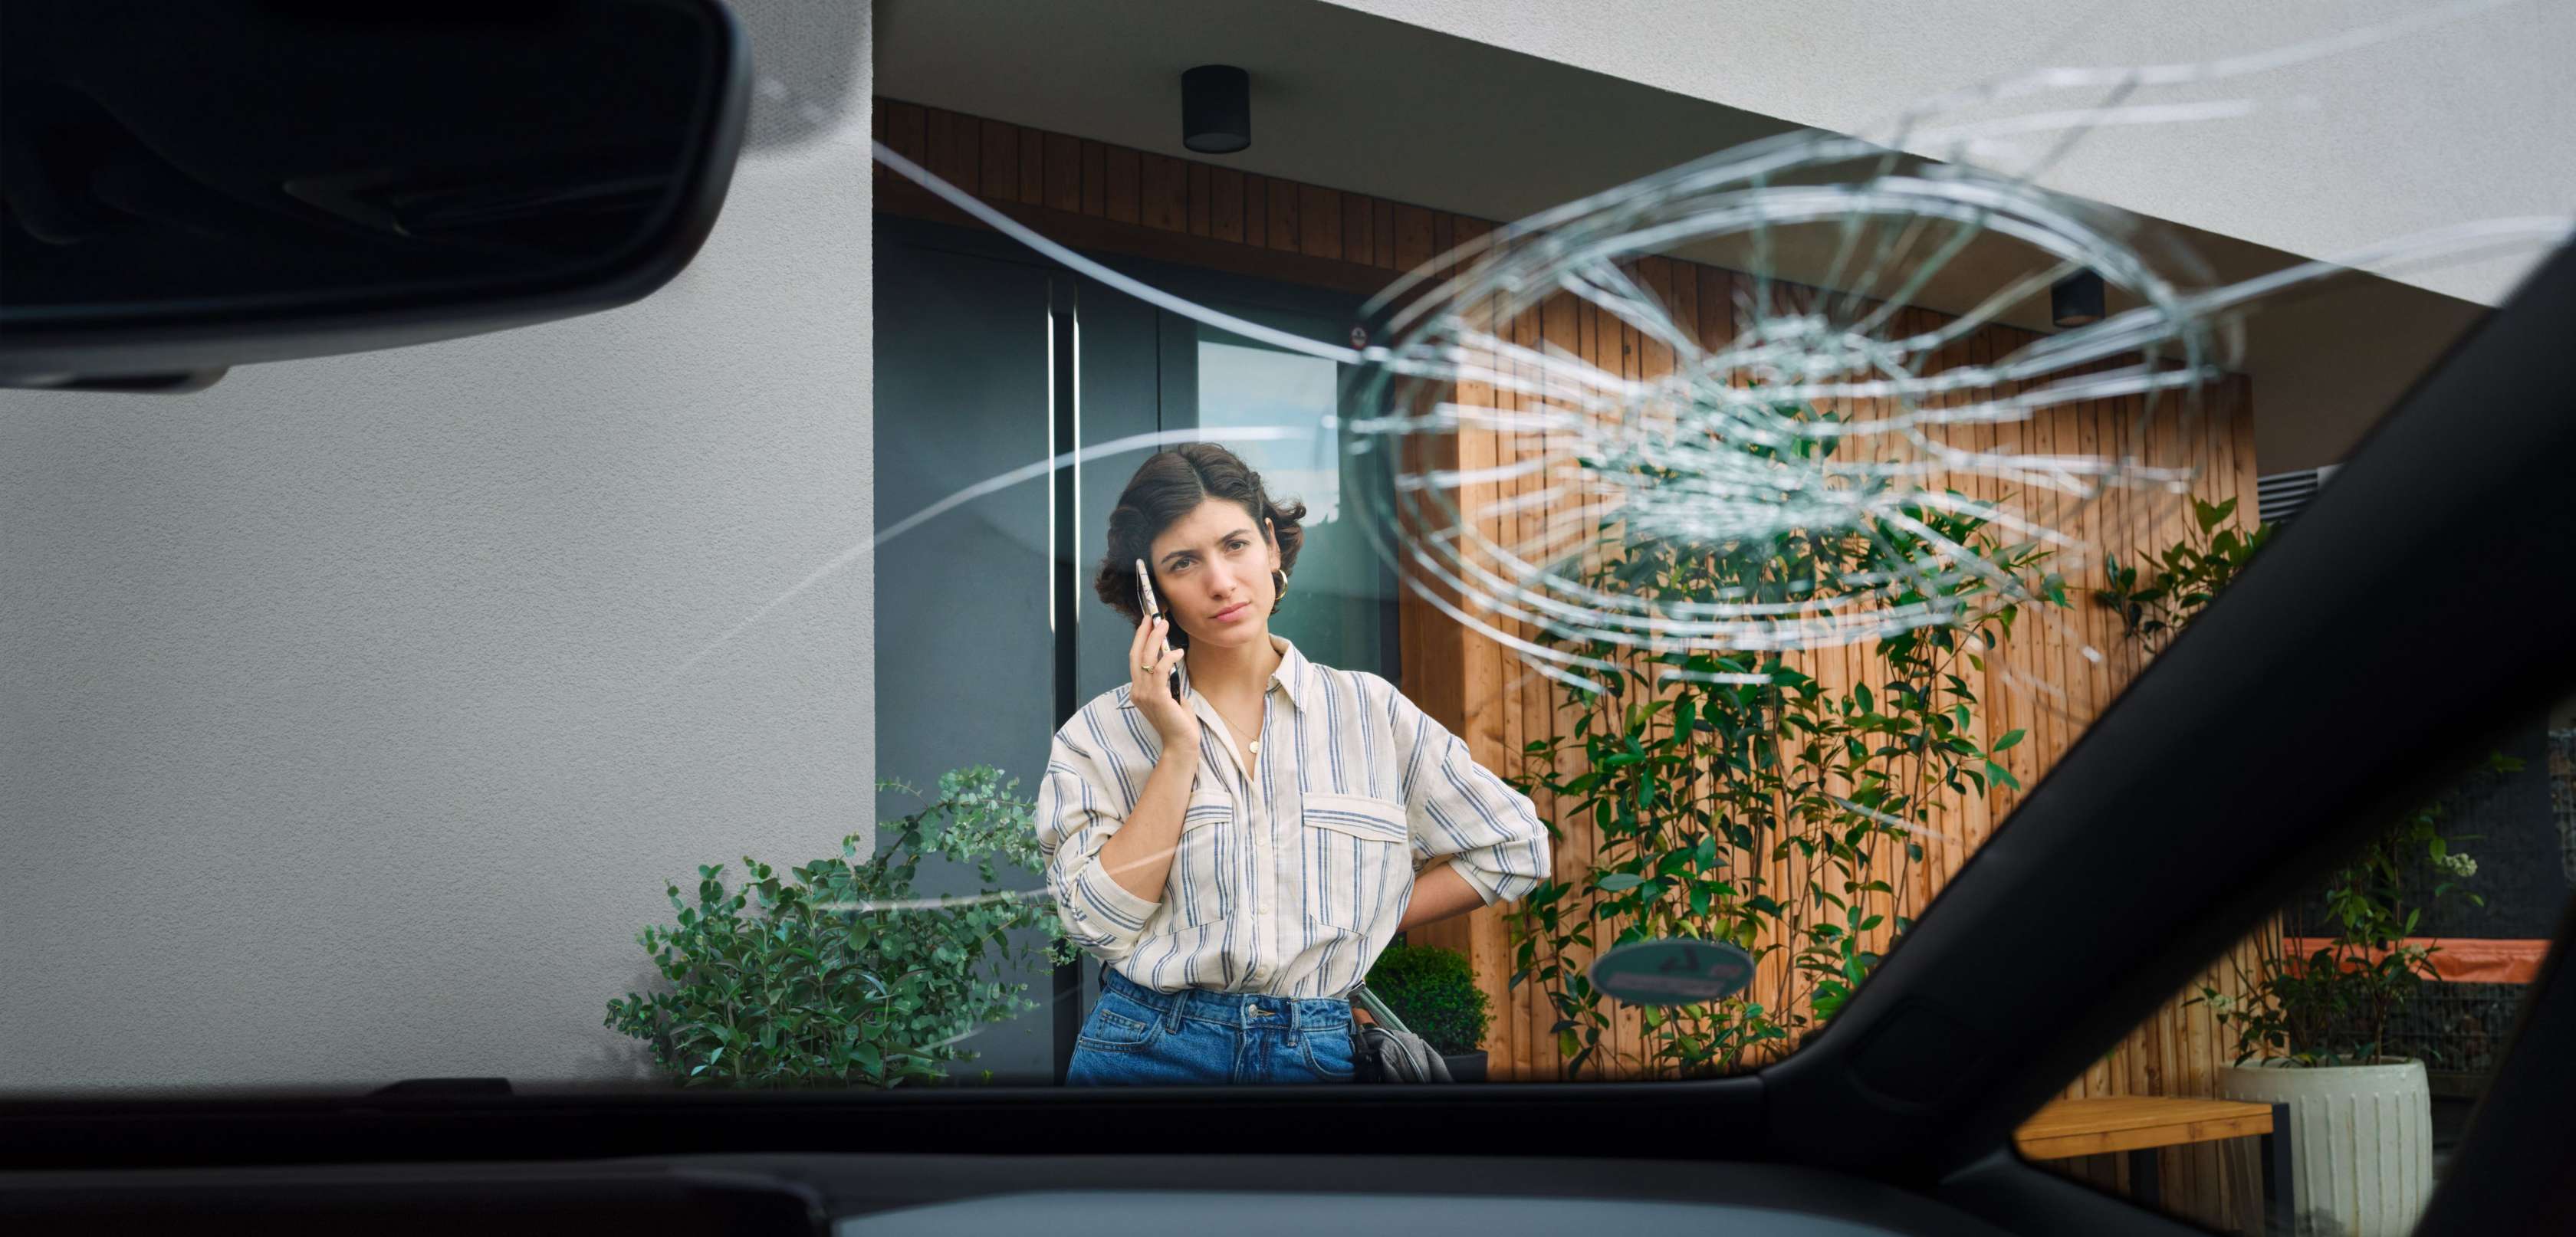 Junge Frau steht telefonierend vor ihrem Auto, das eine kaputte Windschutzscheibe hat